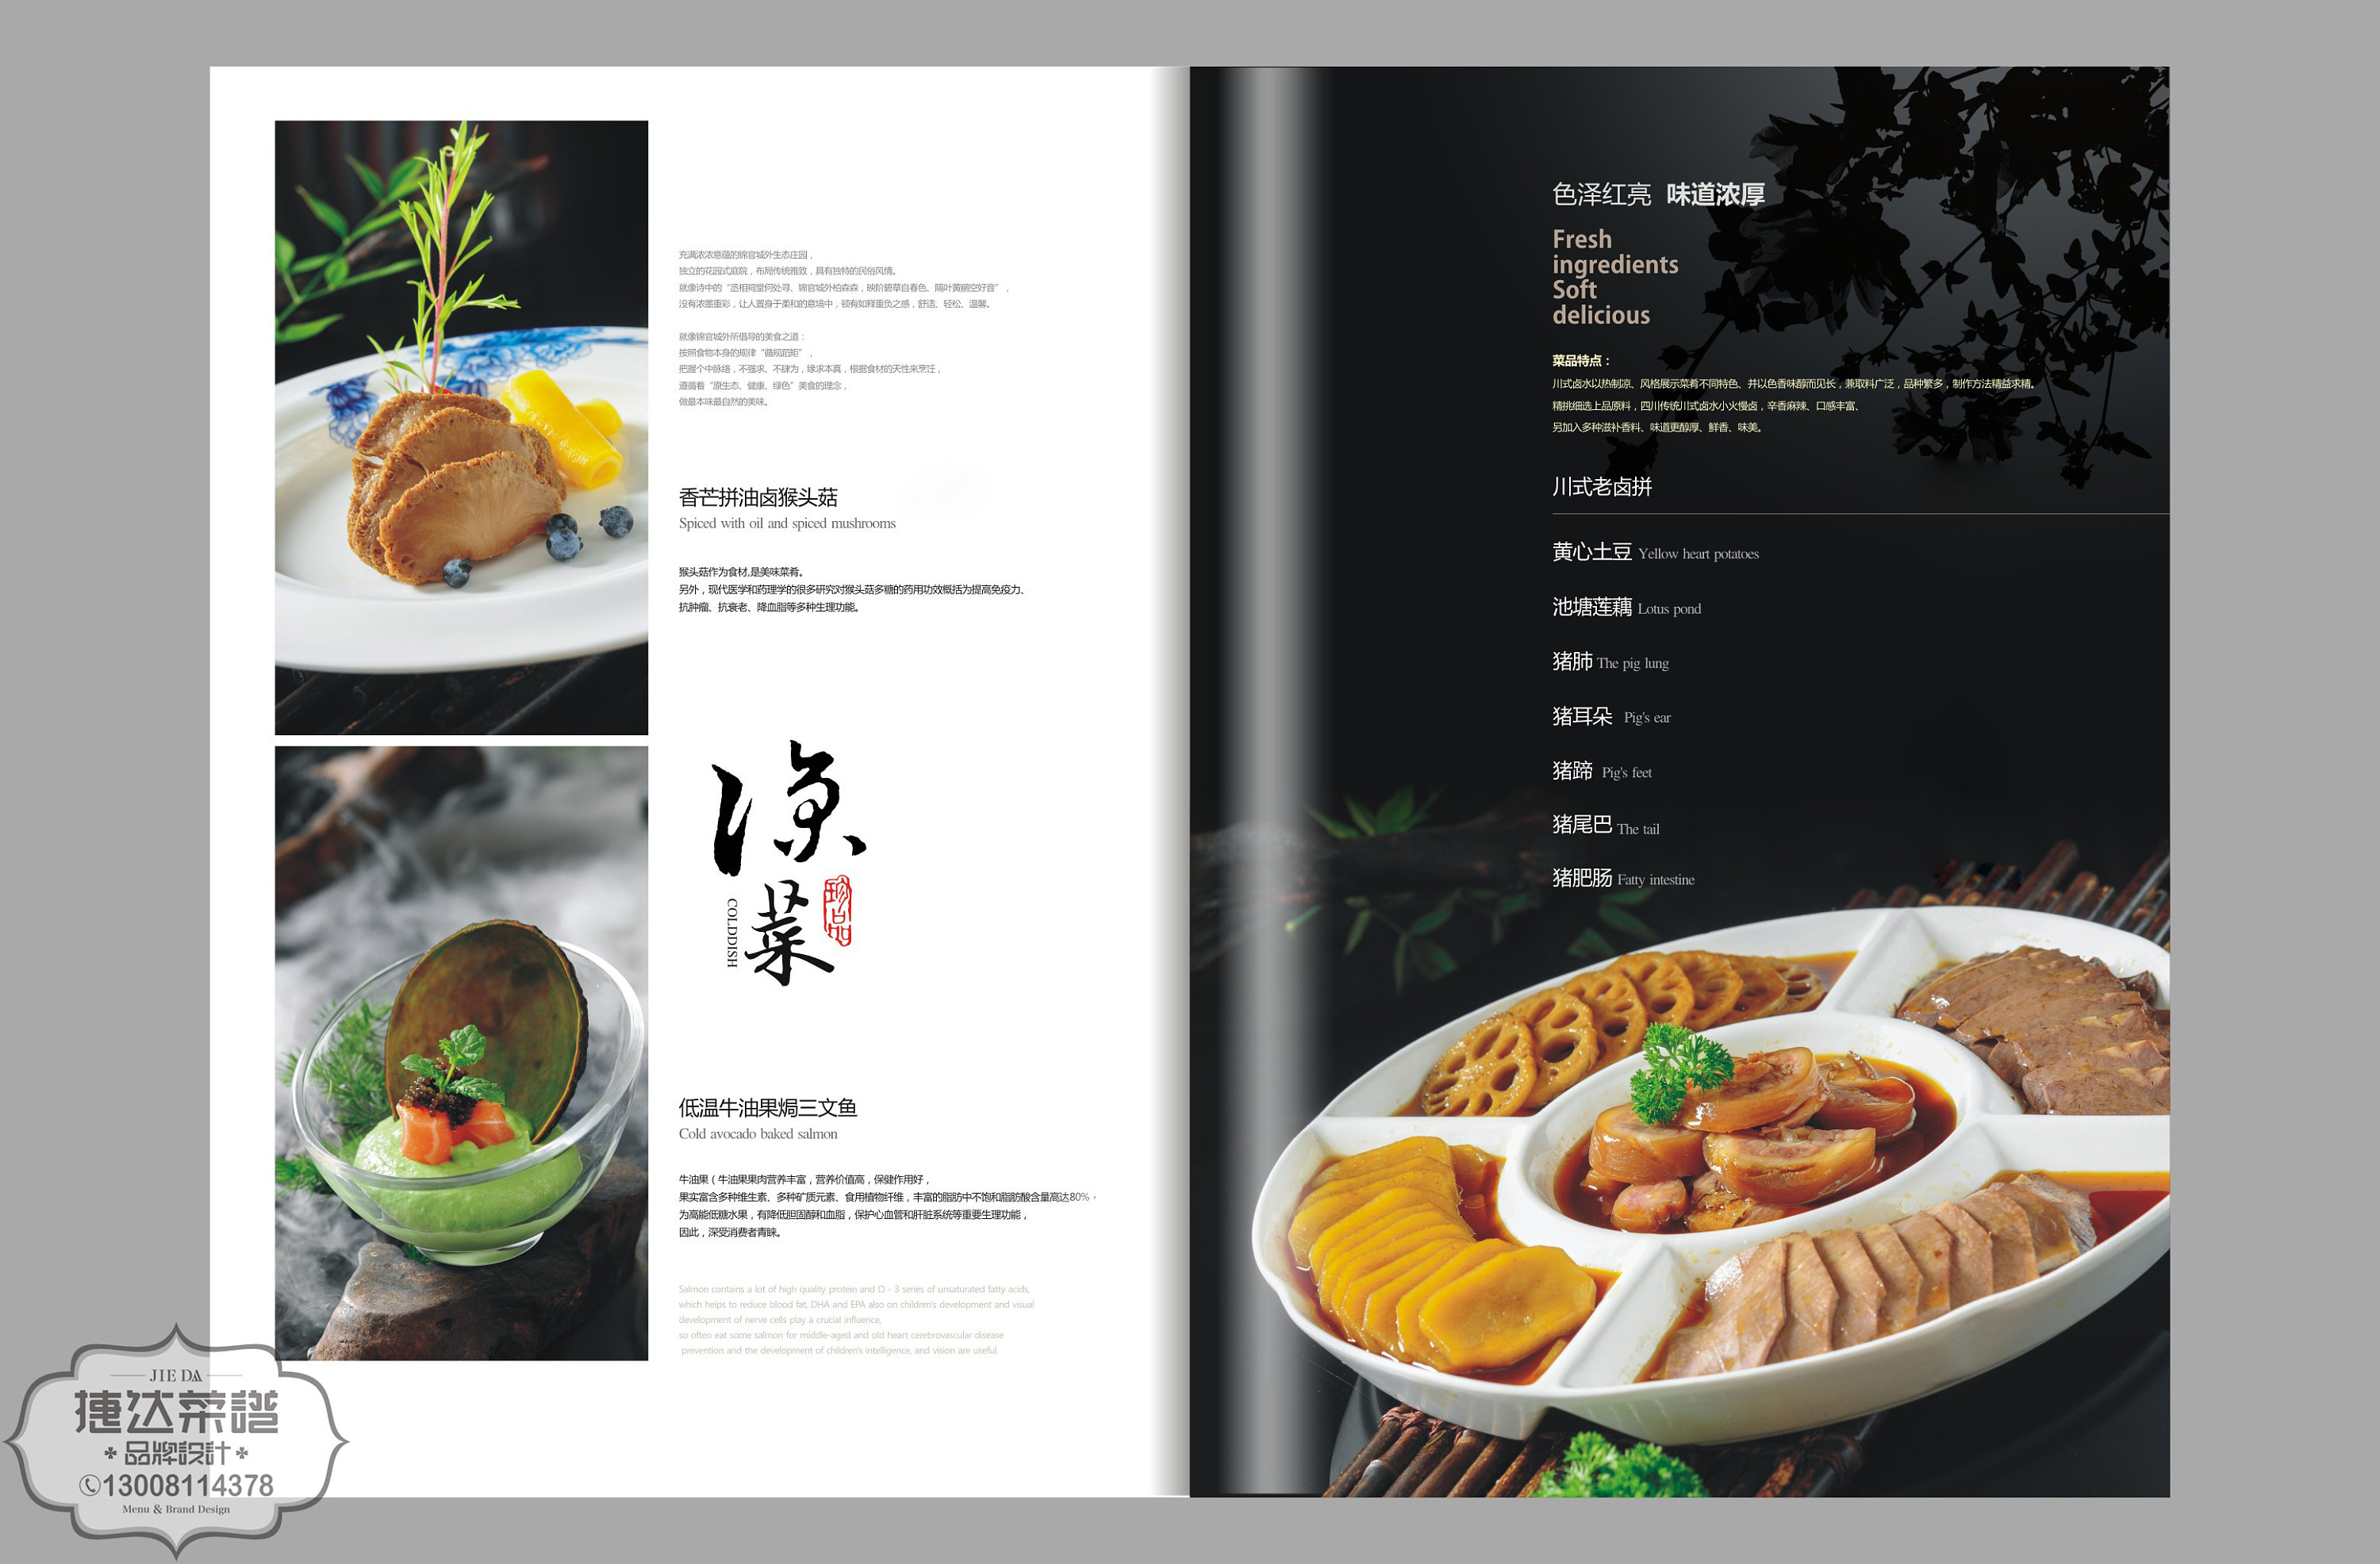 五星级酒店菜谱设计制作规格-菜谱设计印刷尺寸规格大小-捷达菜谱设计制作公司